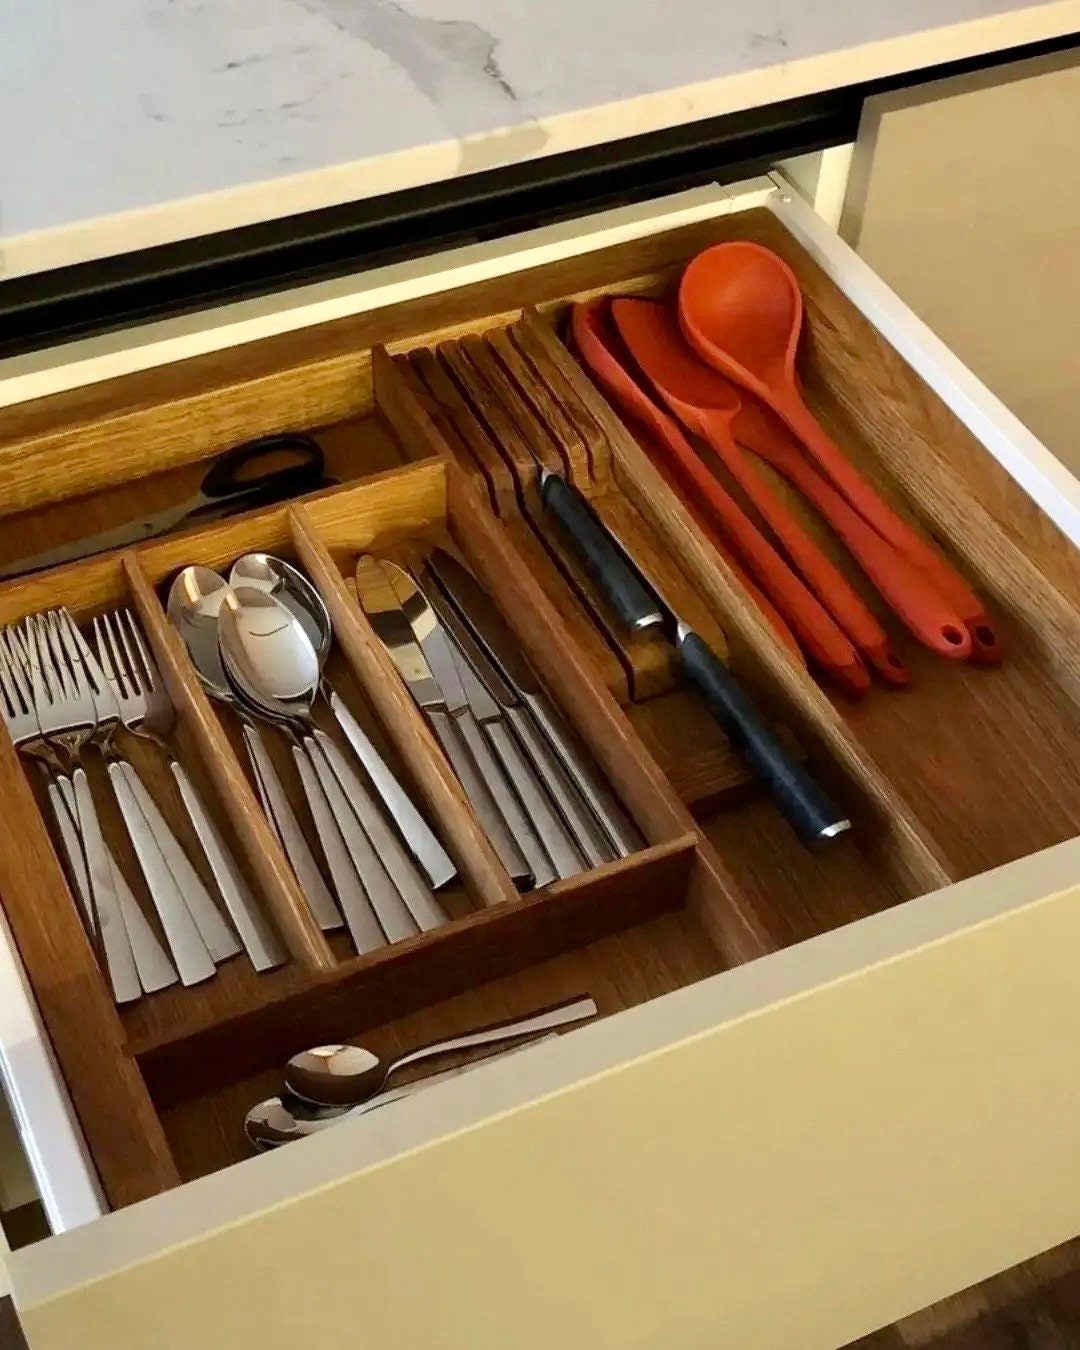 🔥 2 Tiers Cutlery+Utensils Kitchen Drawer Organizer - GEN2 🔥 Fit